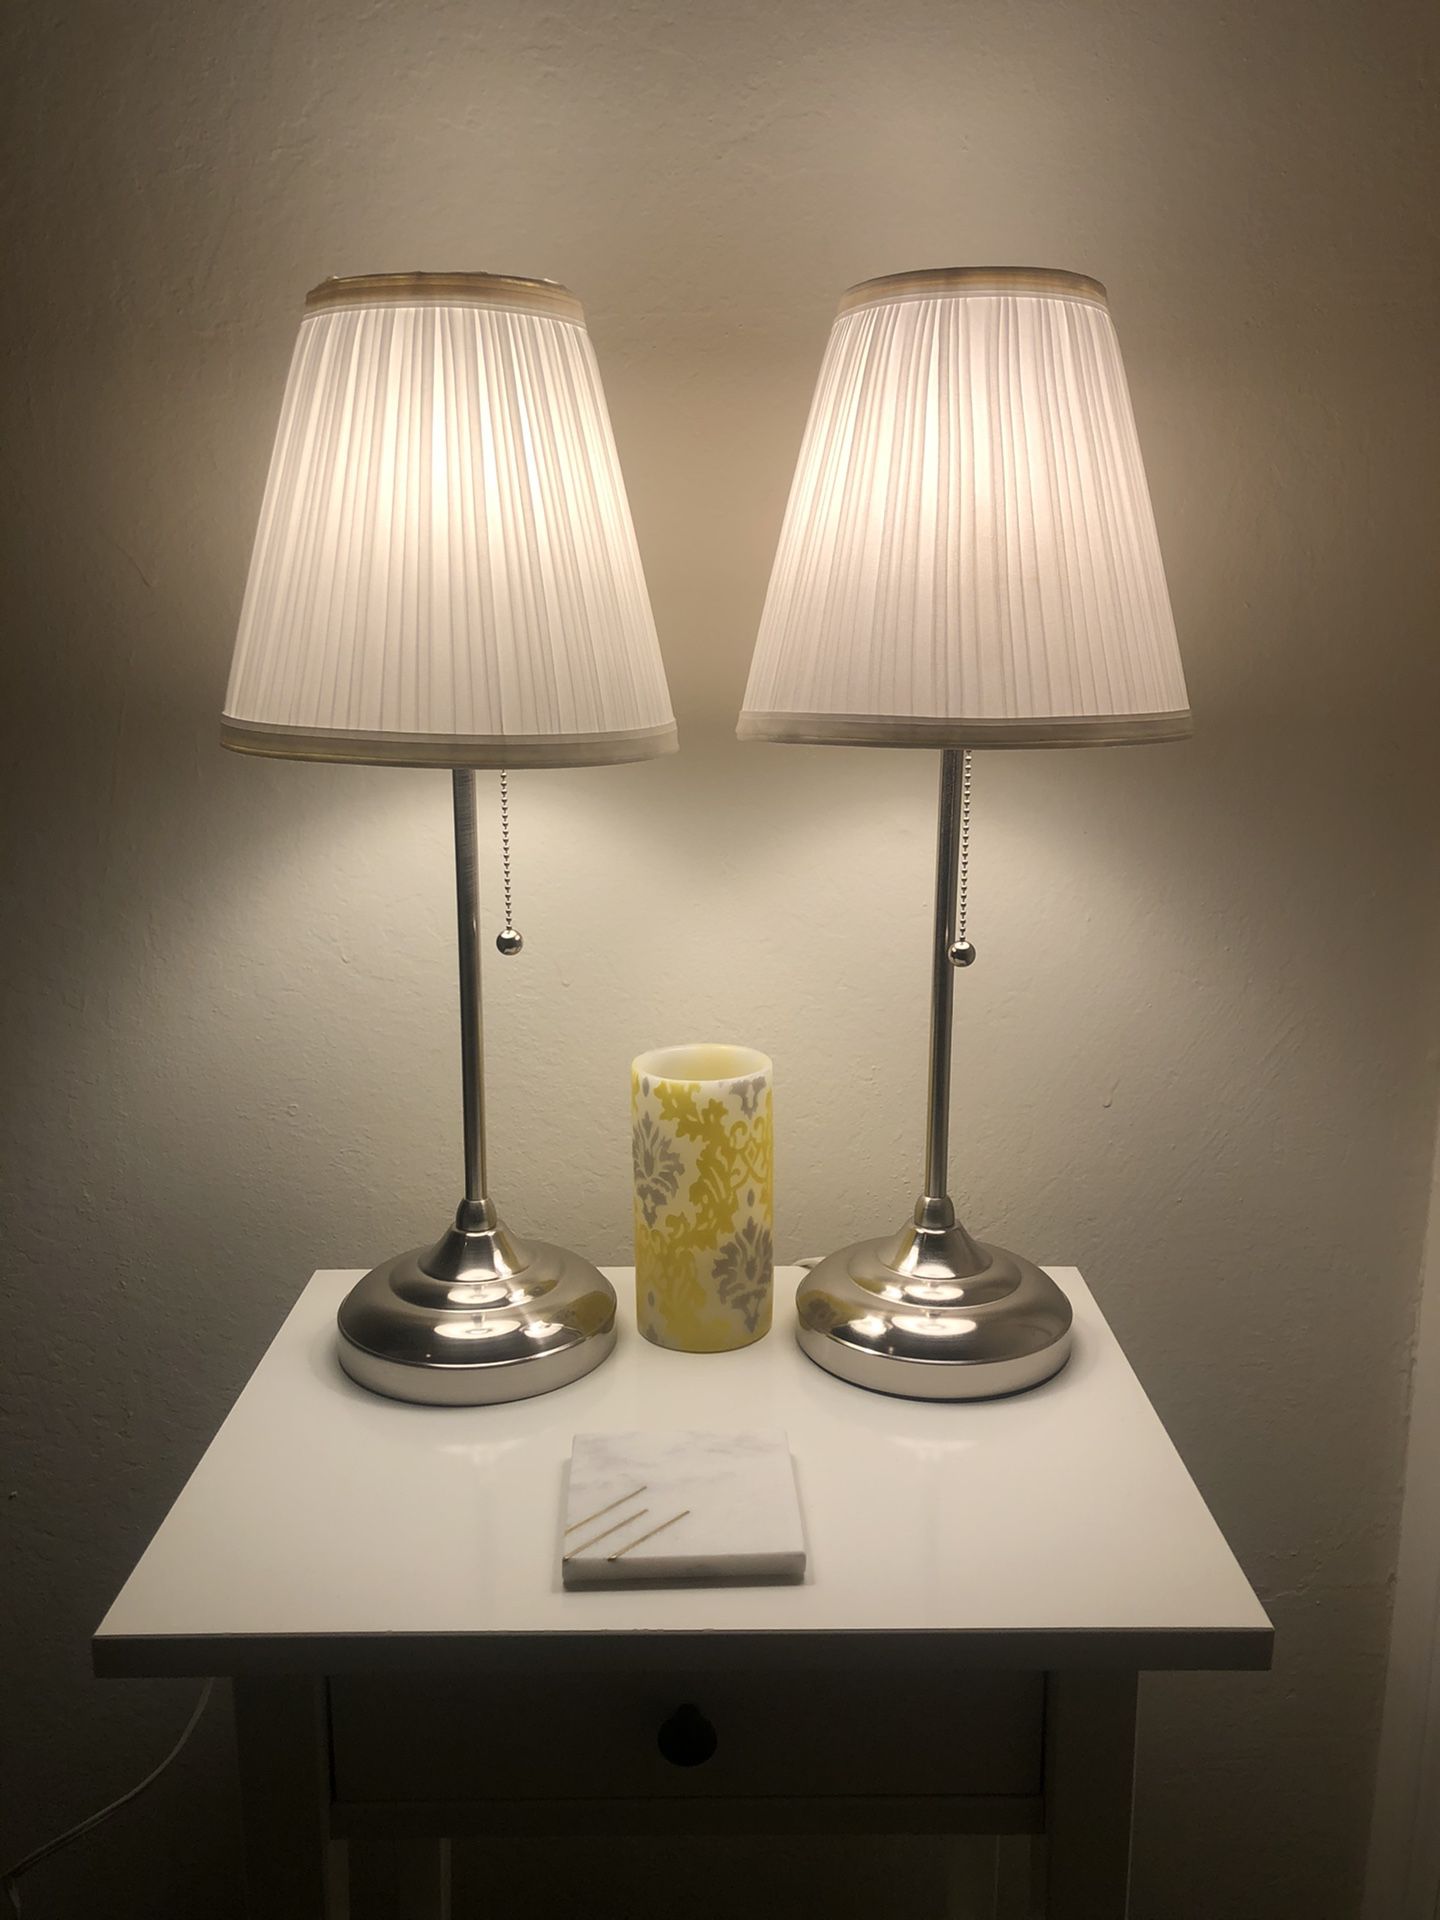 2 ÅRSTID Lamps from IKEA